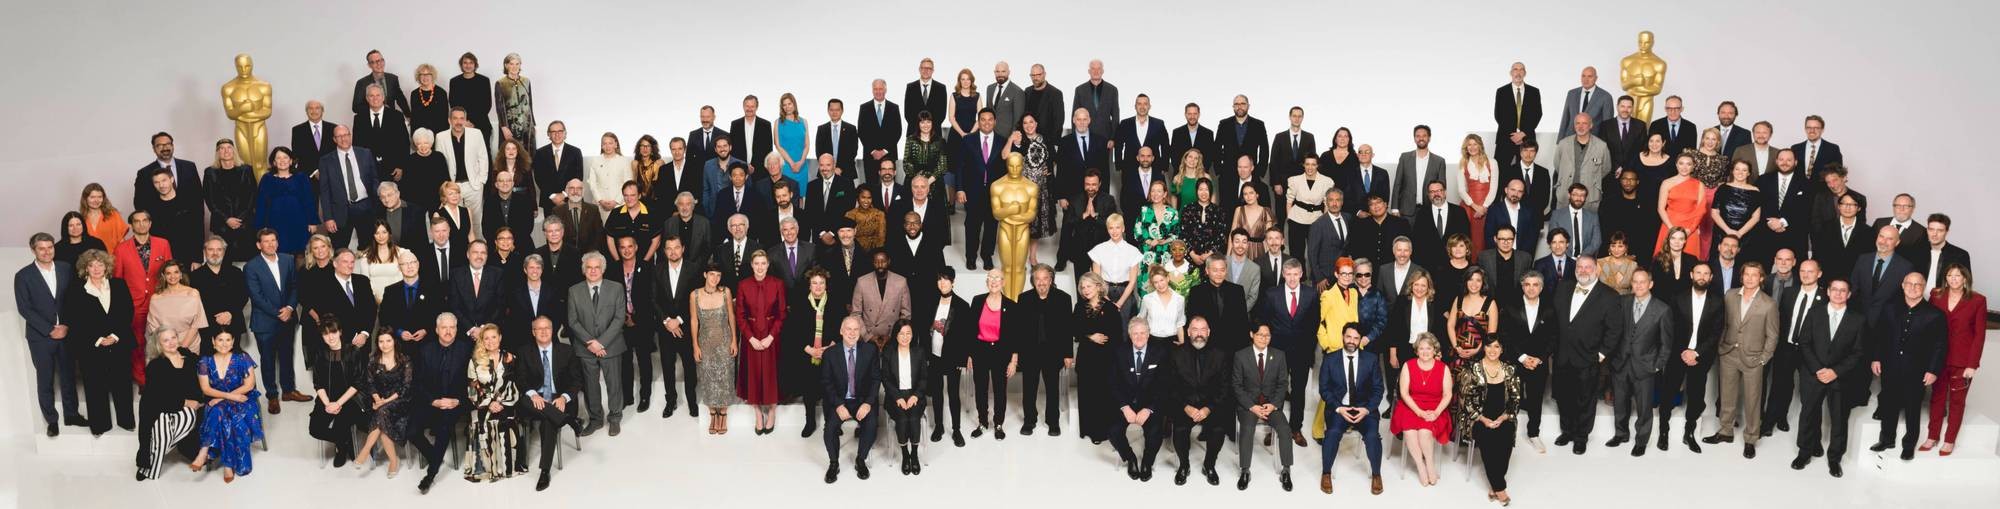 Os indicados ao Oscar 2020 (Foto: Academia de Ciências e Artes Cinematográficas)